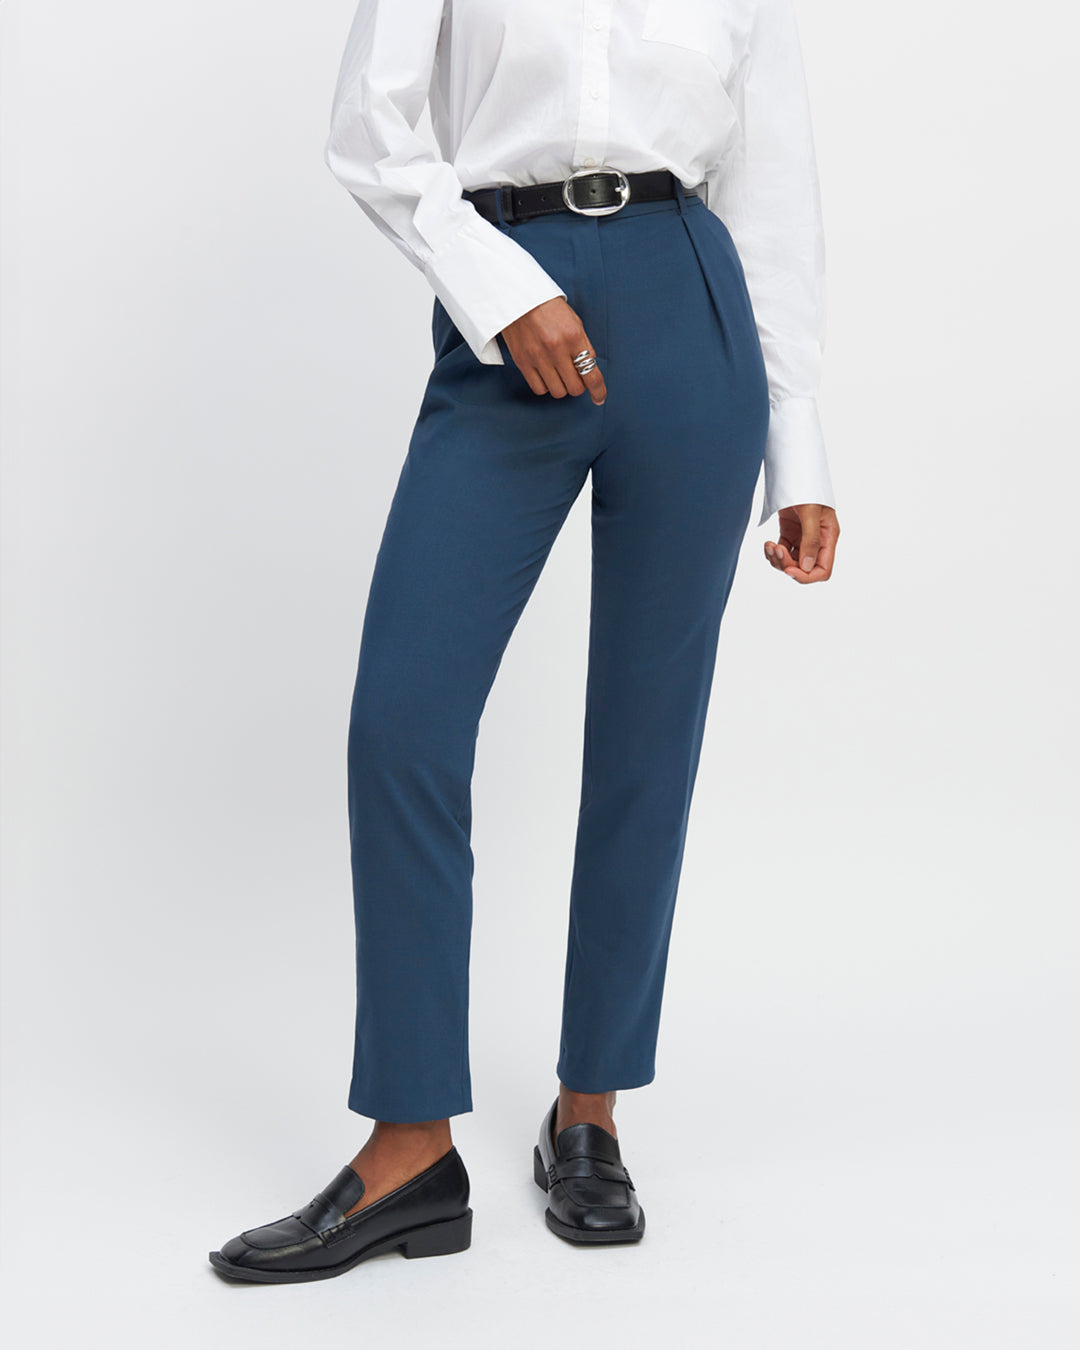 Pantalon-tailleur-bleu-gris-Coupe-7-8eme-taille-haute-Plis-sous-la-ceinture-Deux-poches-a-l’italienne-Ceinture-assortie-ton-sur-ton-17H10-tailleurs-pour-femme-paris-